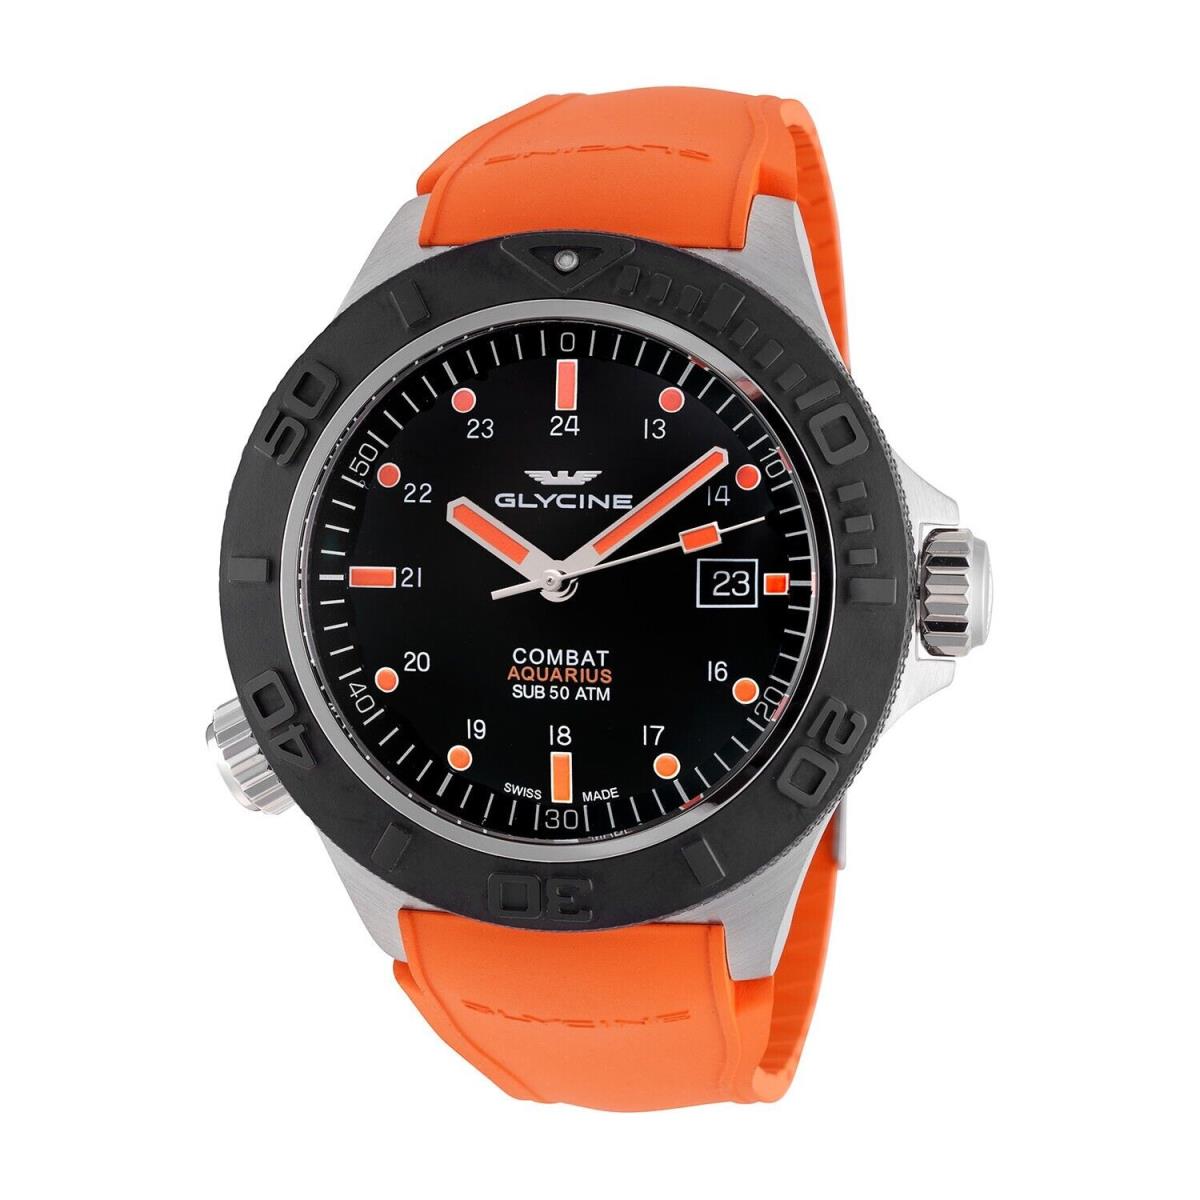 Glycine GL0040 Combat Sub Aquarius Black Dial Orange Rubber Automatic Watch